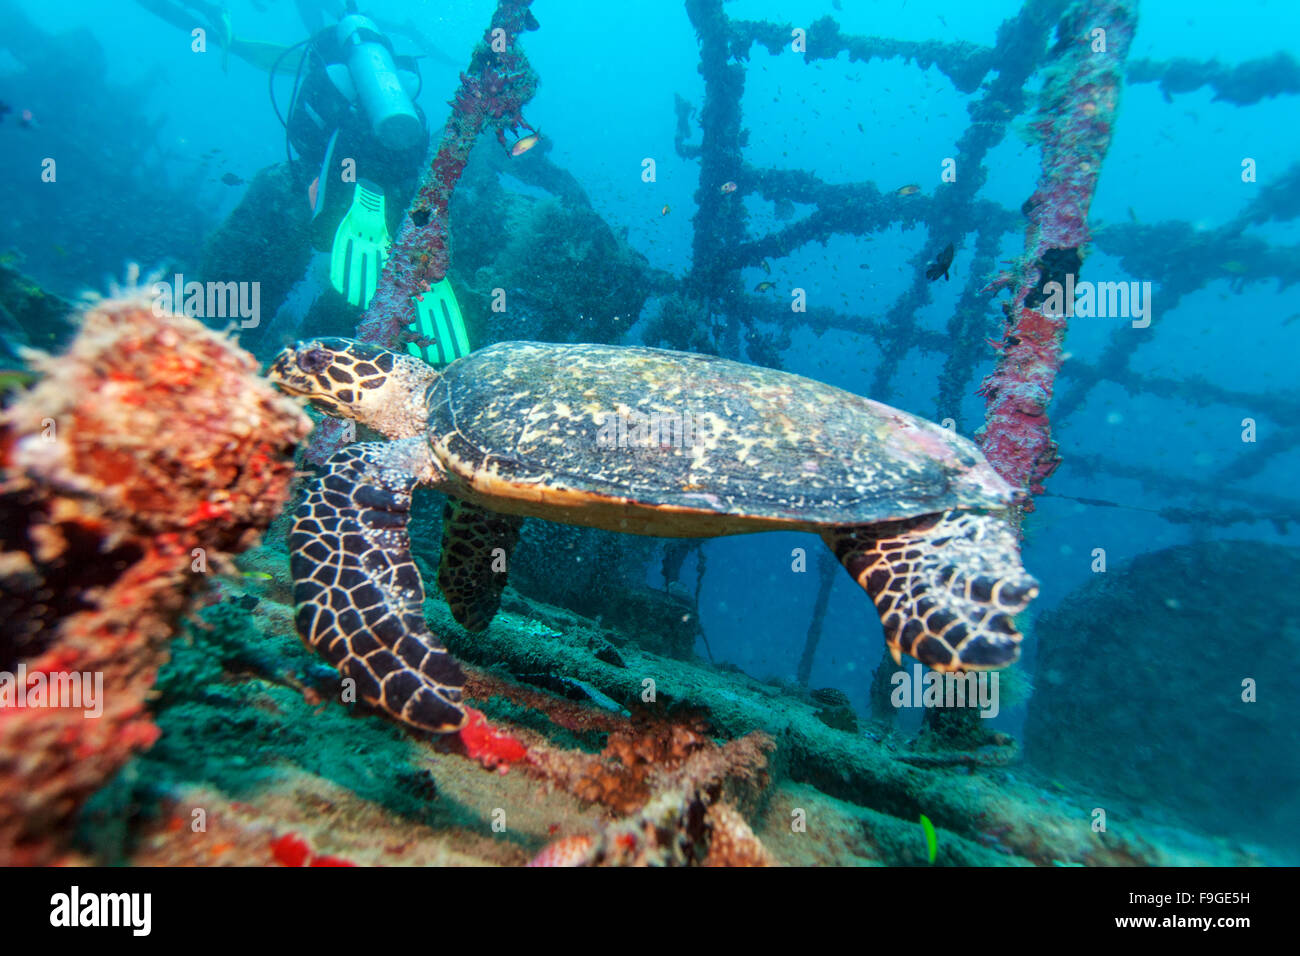 La tortue imbriquée (Eretmochelys imbricata) près de coraux, Maldives Banque D'Images